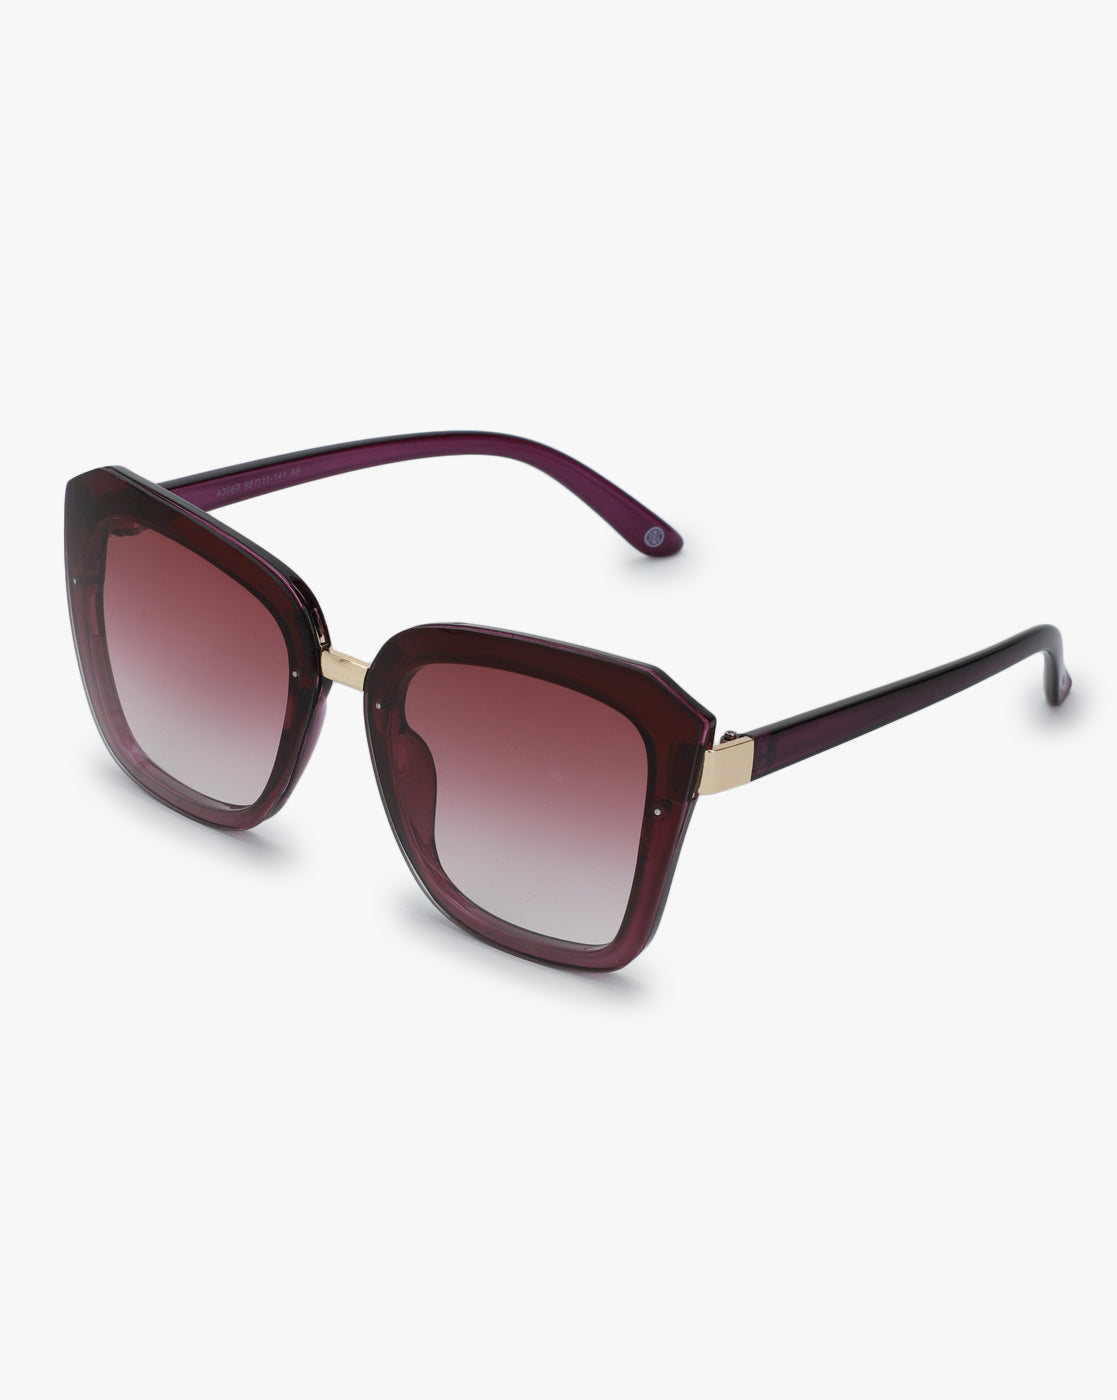 Carlton London Regular Lens Square Sunglasses For Women